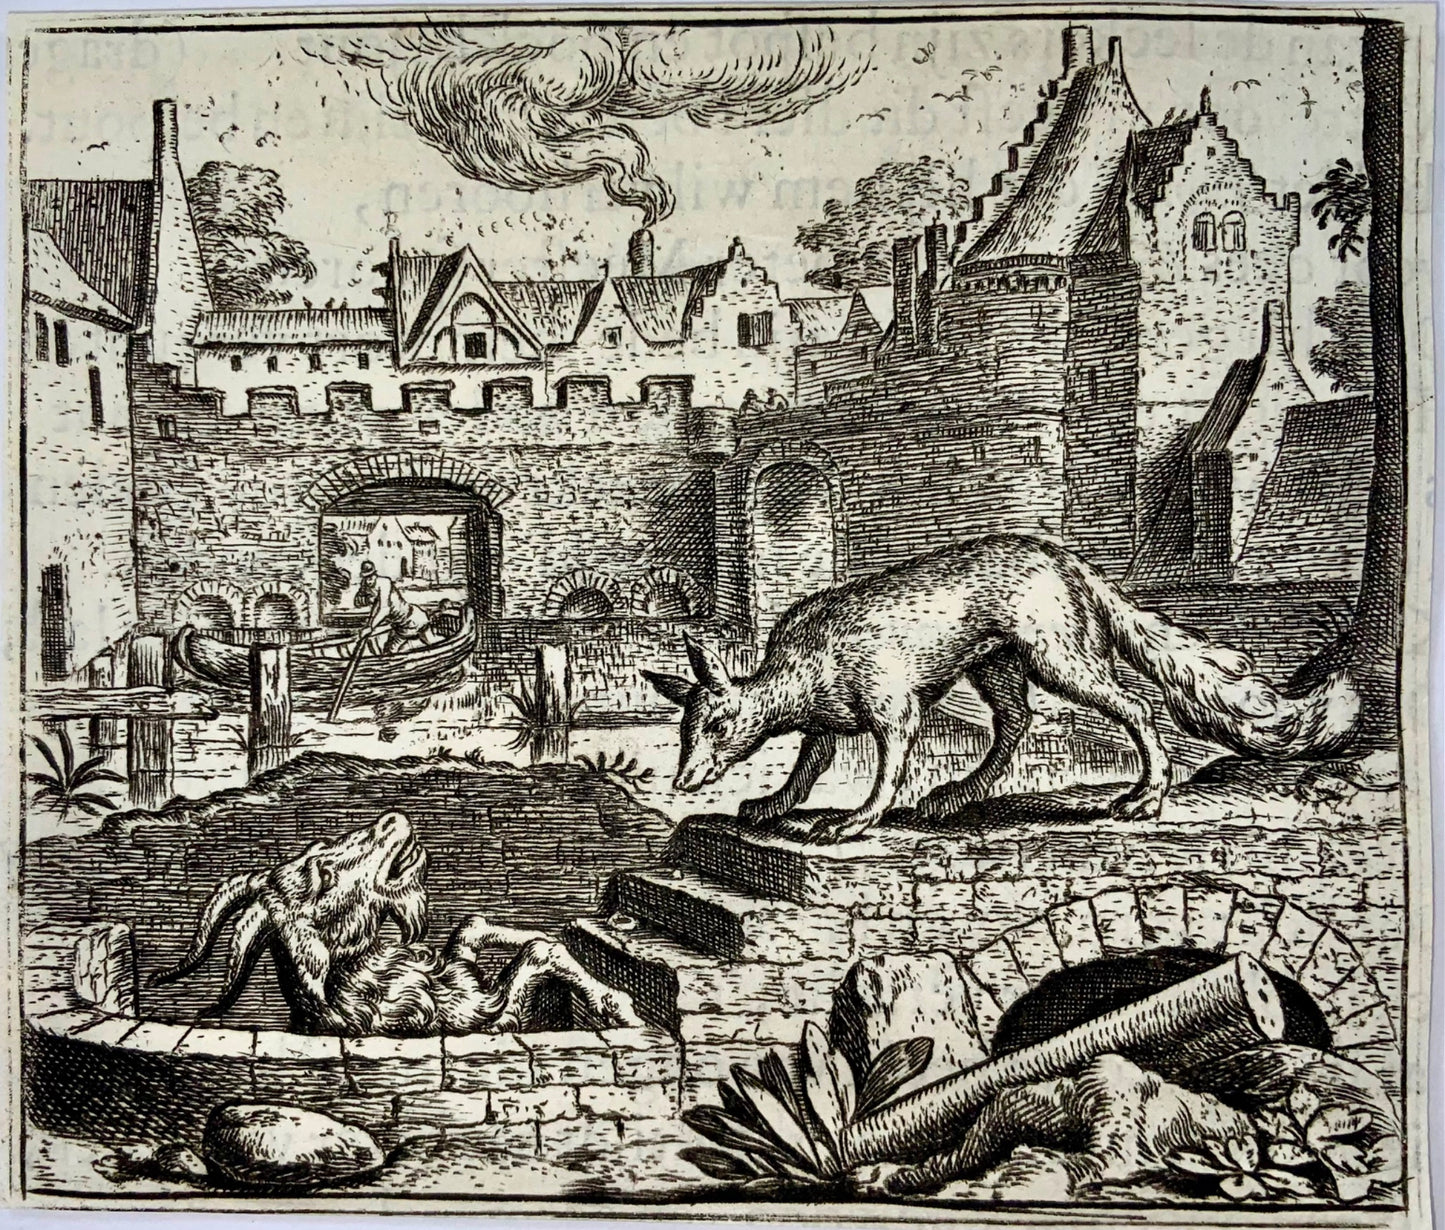 1617 Gheeraerts, incisione magistrale, Esopo: la volpe e la capra, favola